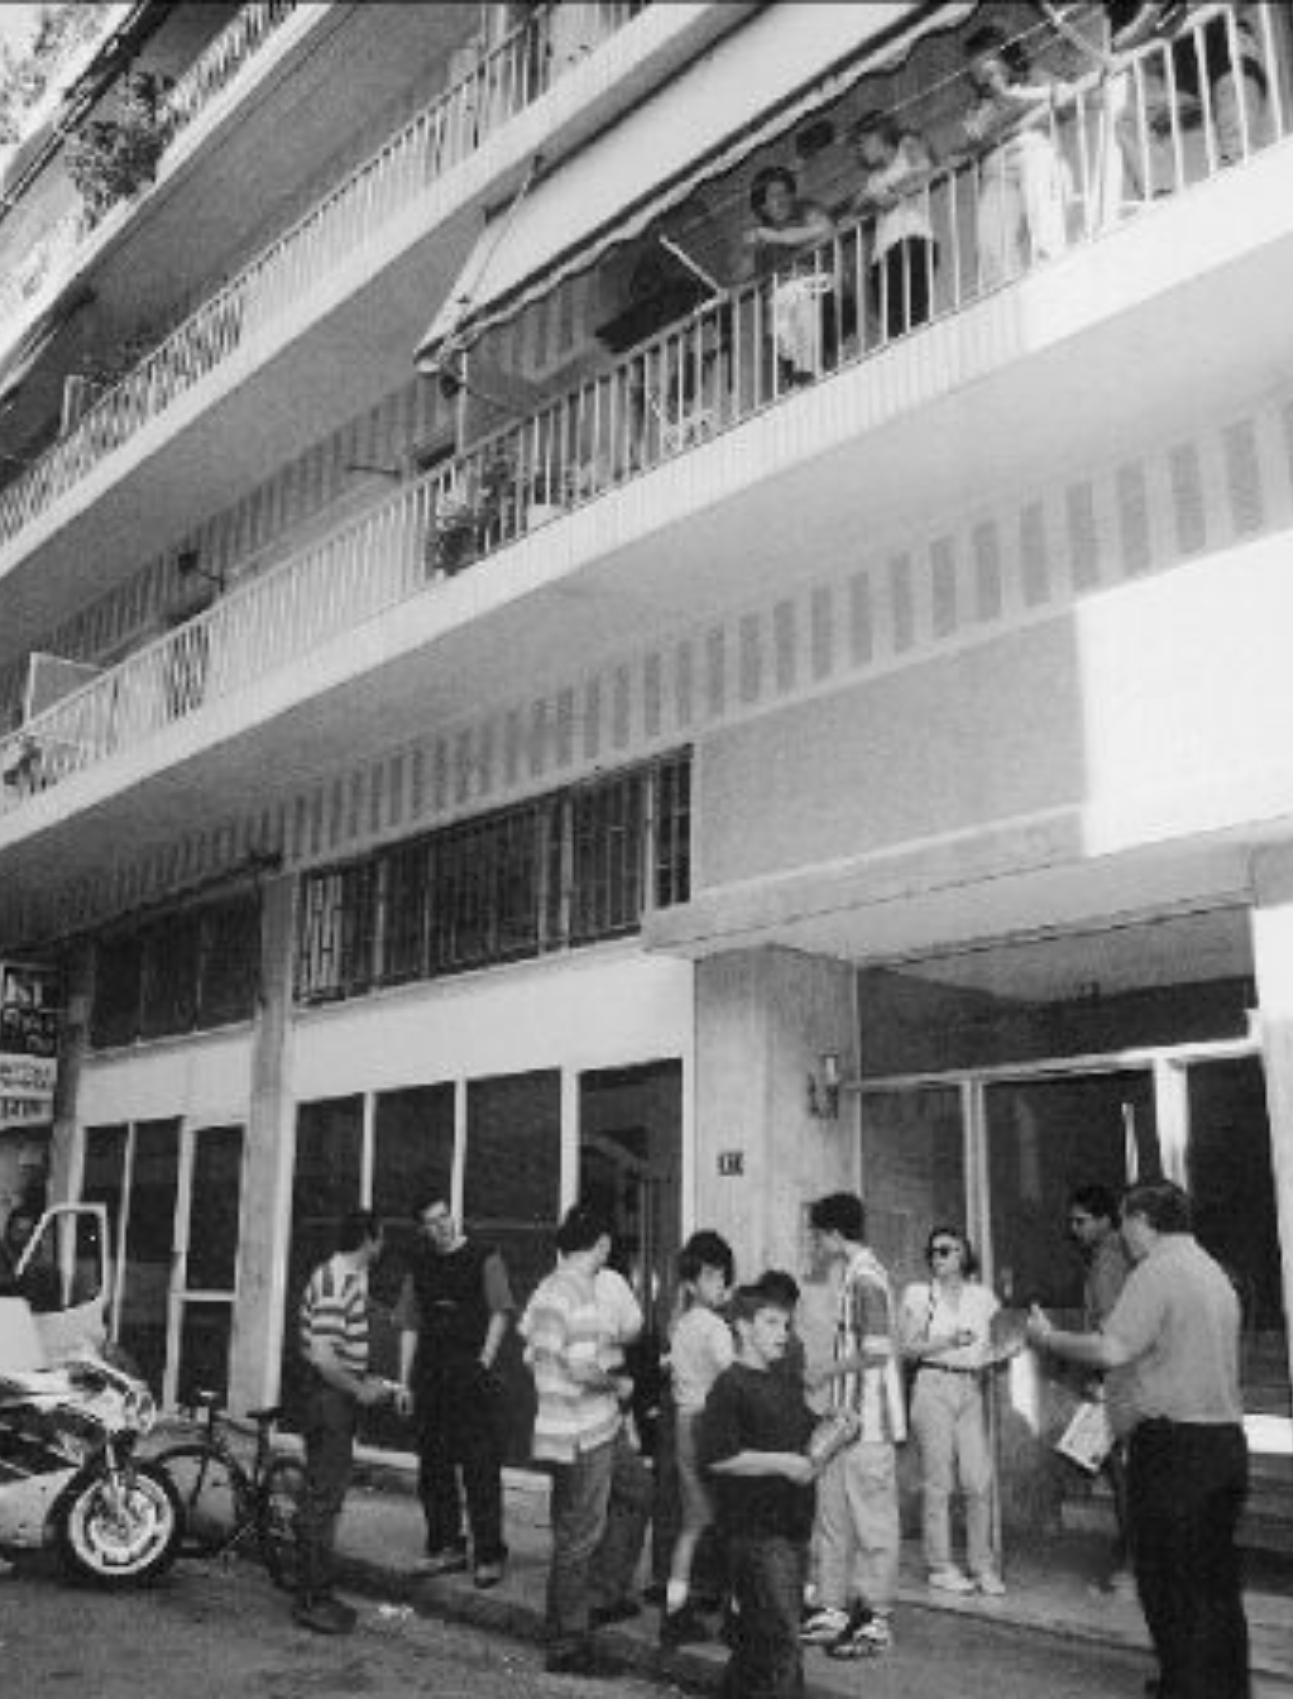 Παγκράτι 1997: Κρατούσαν το άψυχο σώμα του παιδιού τους για μέρες μέσα στο διαμέρισμα έκλειναν τα μάτια στην αλήθεια- Το διαμέρισμα ήταν βυθισμένο στην απόλυτη σιωπή